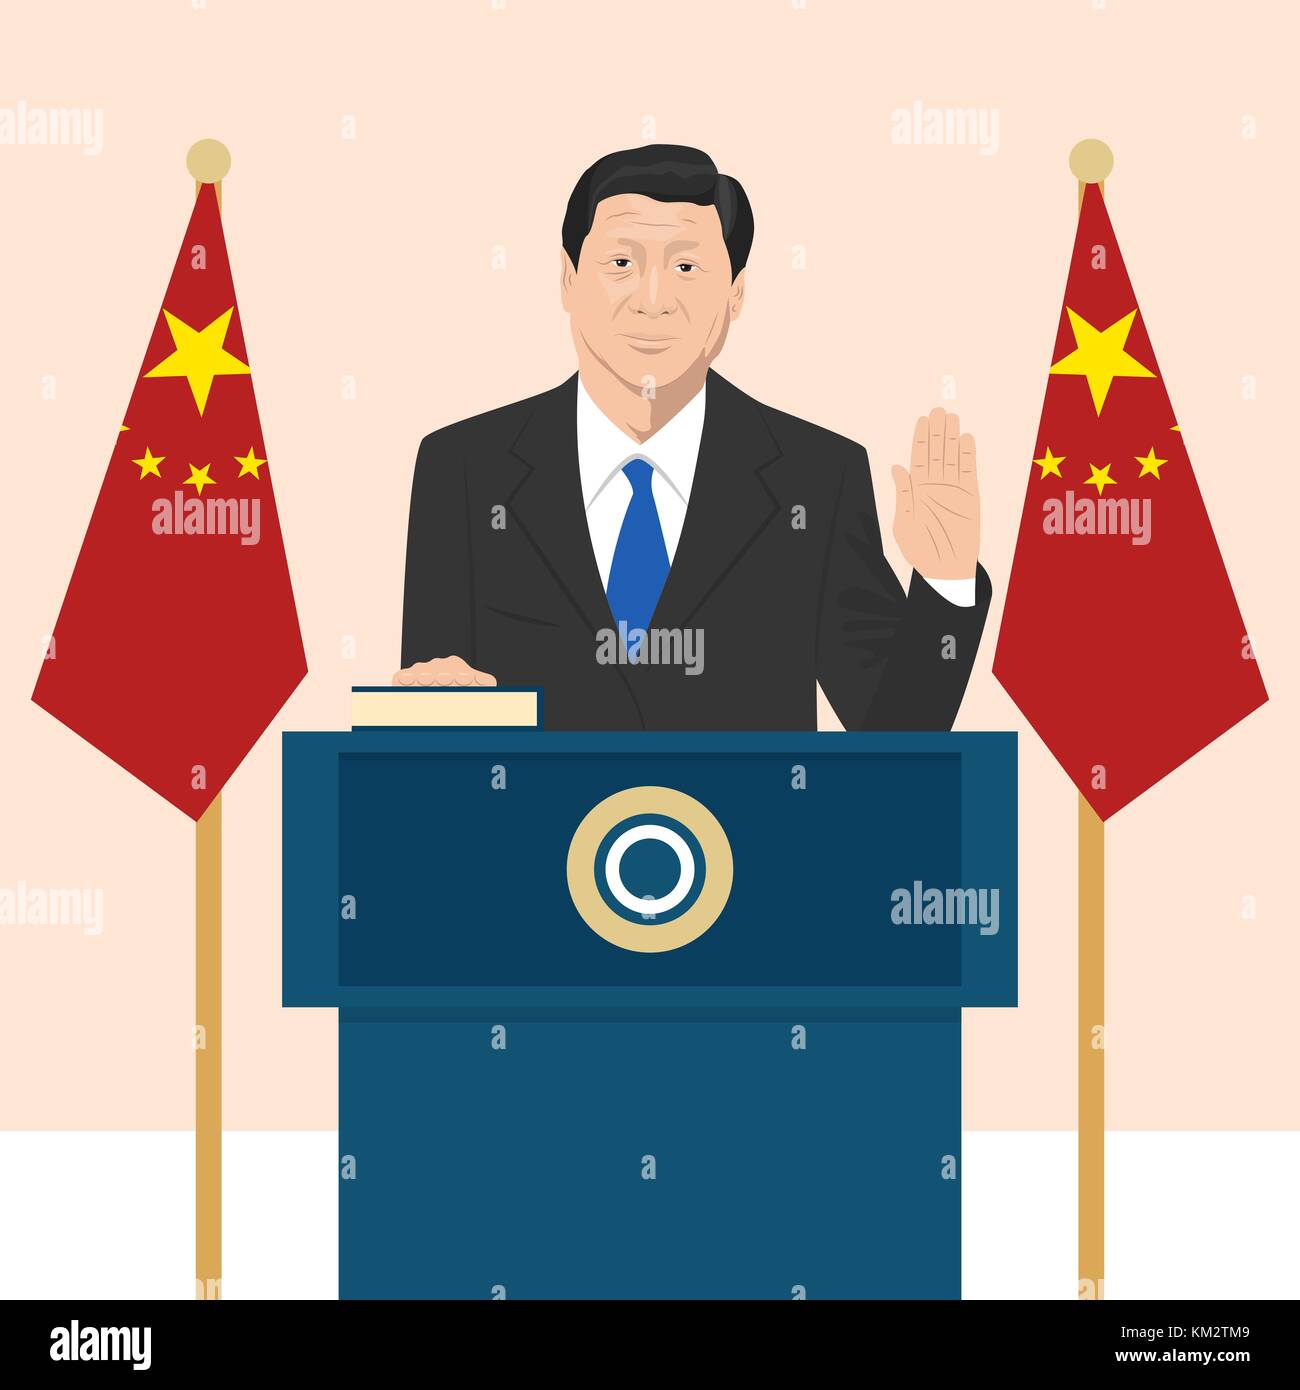 02.12.2017 llustrazione editoriale del presidente della repubblica popolare di cina xi jinping che sta prendendo un giuramento sulla bandiera francese sullo sfondo. Illustrazione Vettoriale